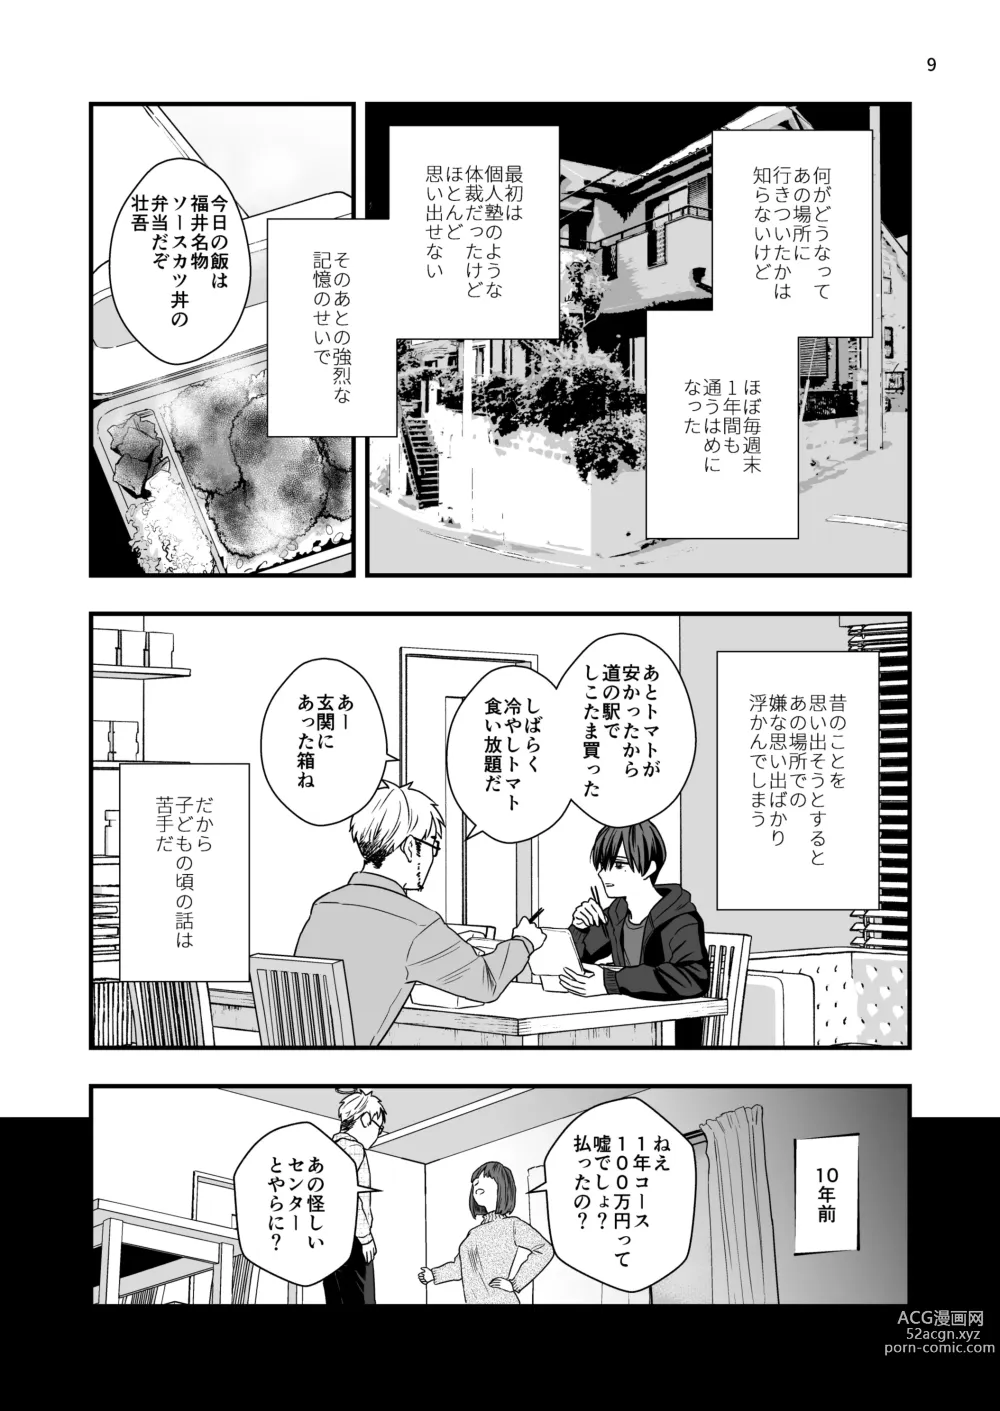 Page 9 of doujinshi Nananen Mae no Toge